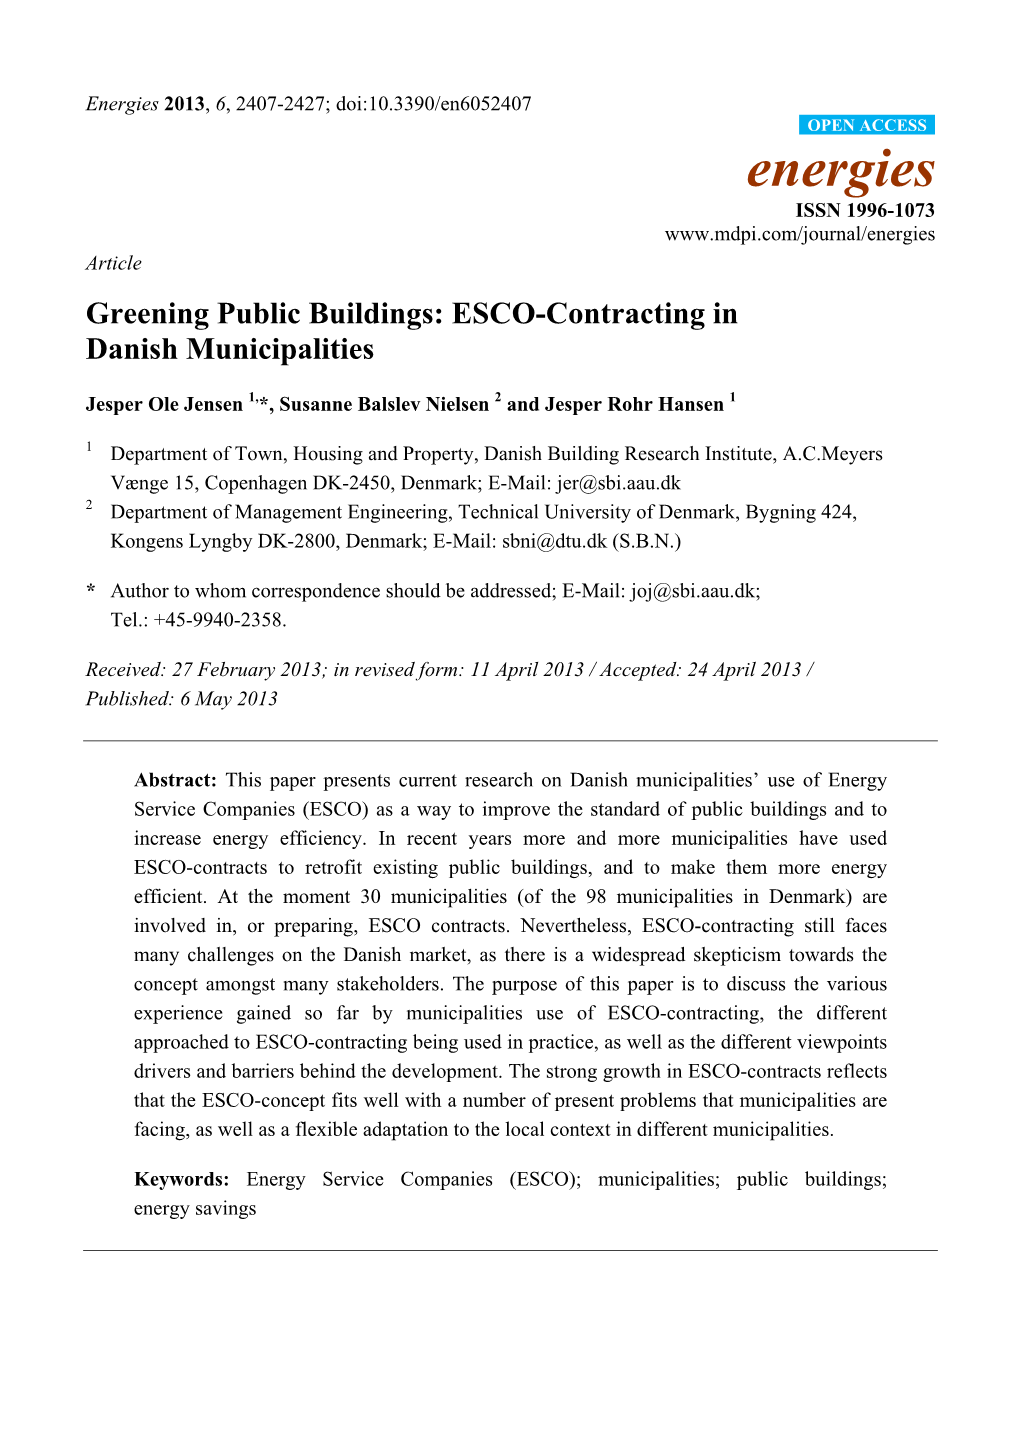 ESCO-Contracting in Danish Municipalities